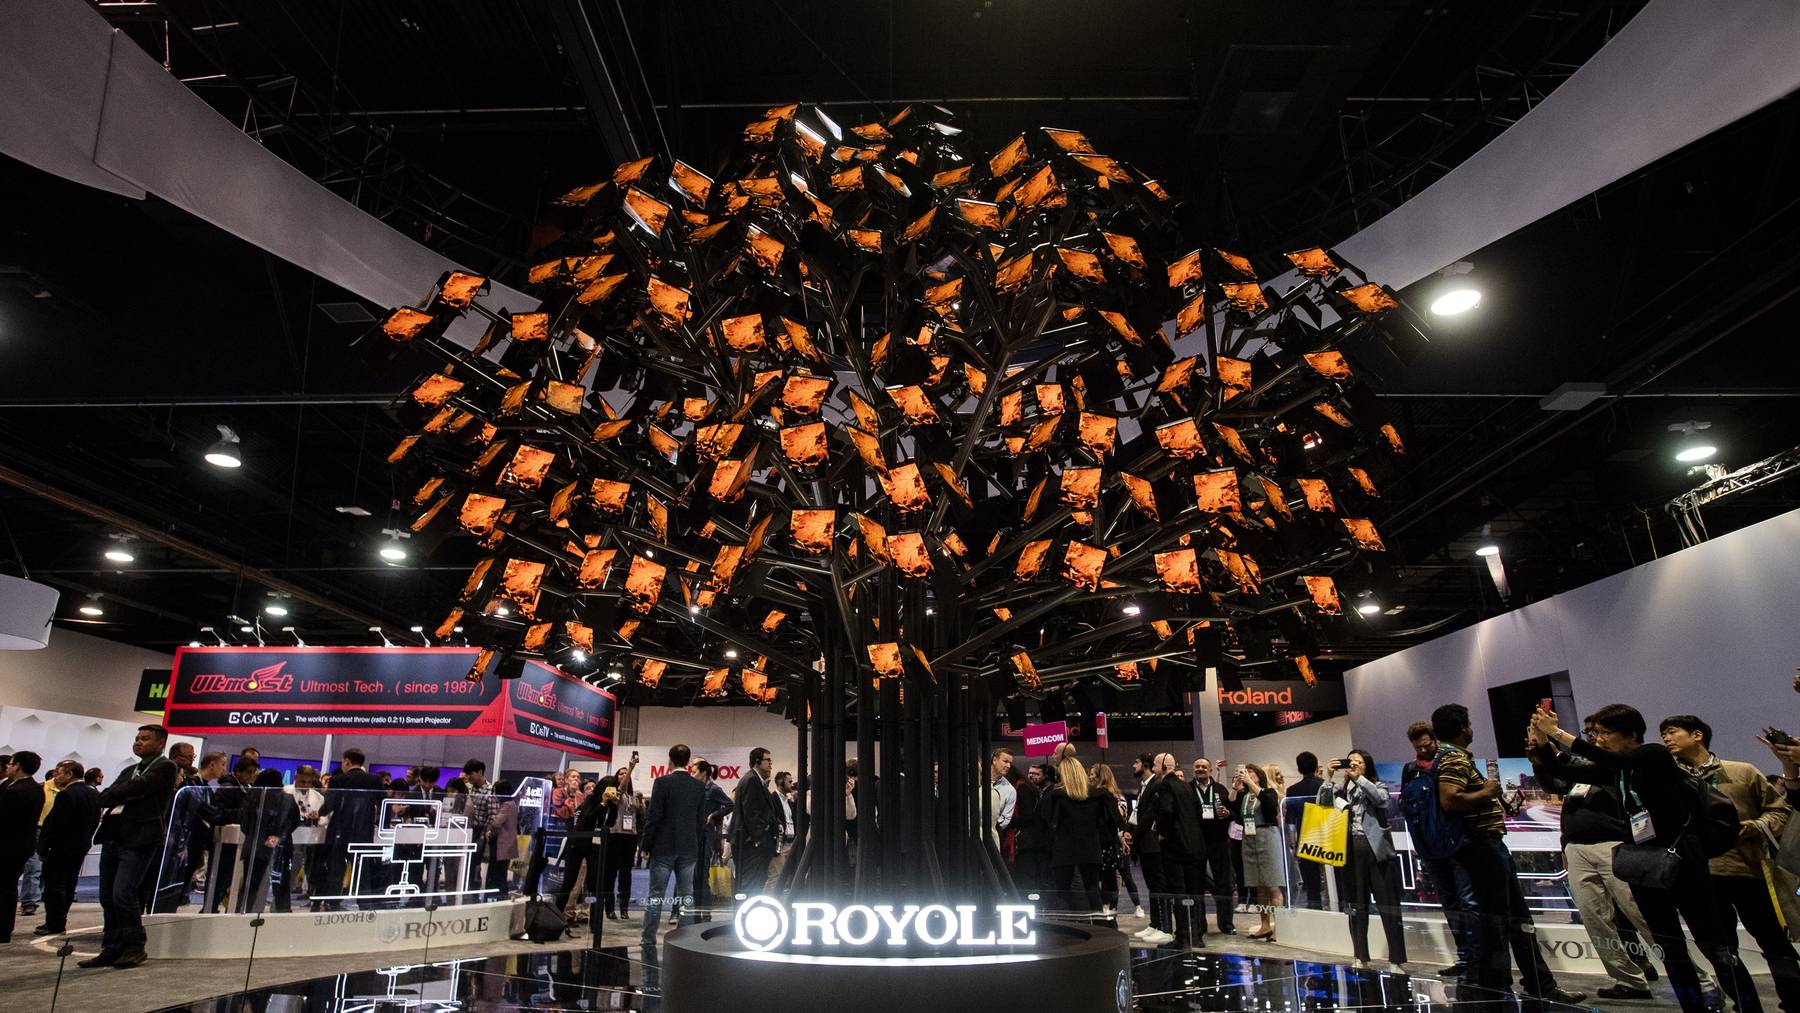 Der chinesische Smartphonehersteller Royole hat bei seiner Ausstellung gleich einen Baum aus Mobilgeräten aufgestellt.